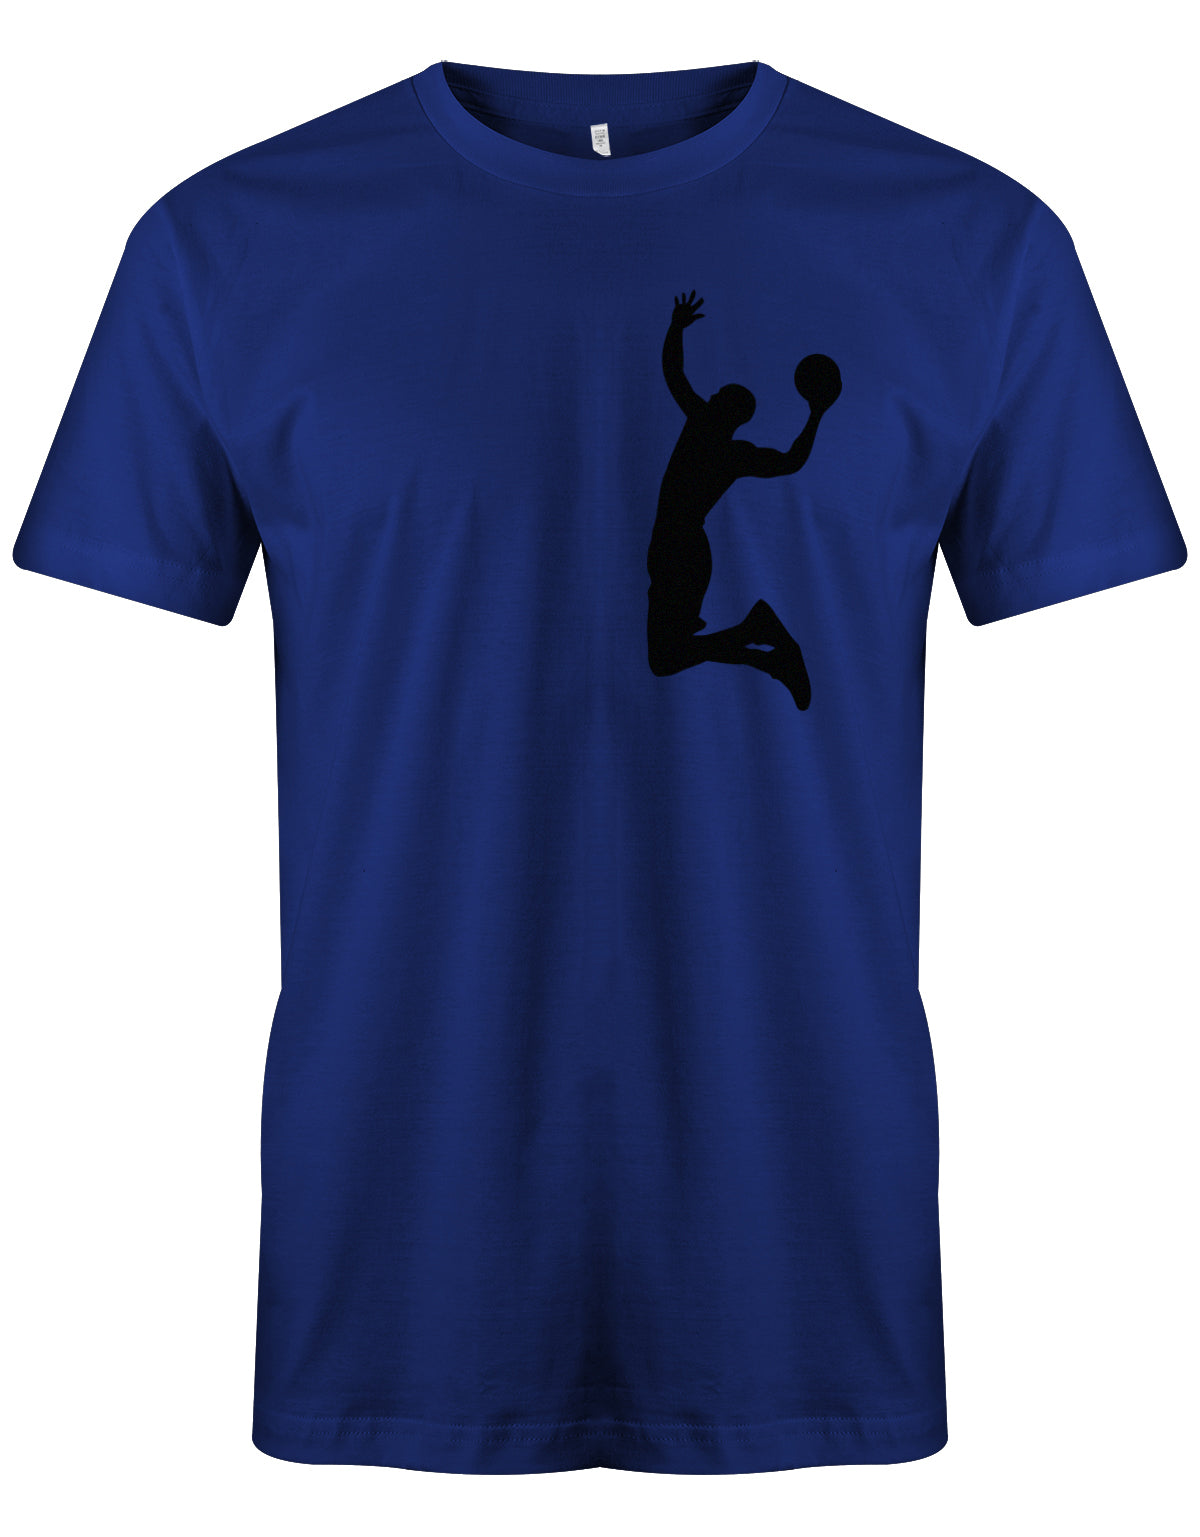 herren-shirt-royalblau5cxtxckwQbweb